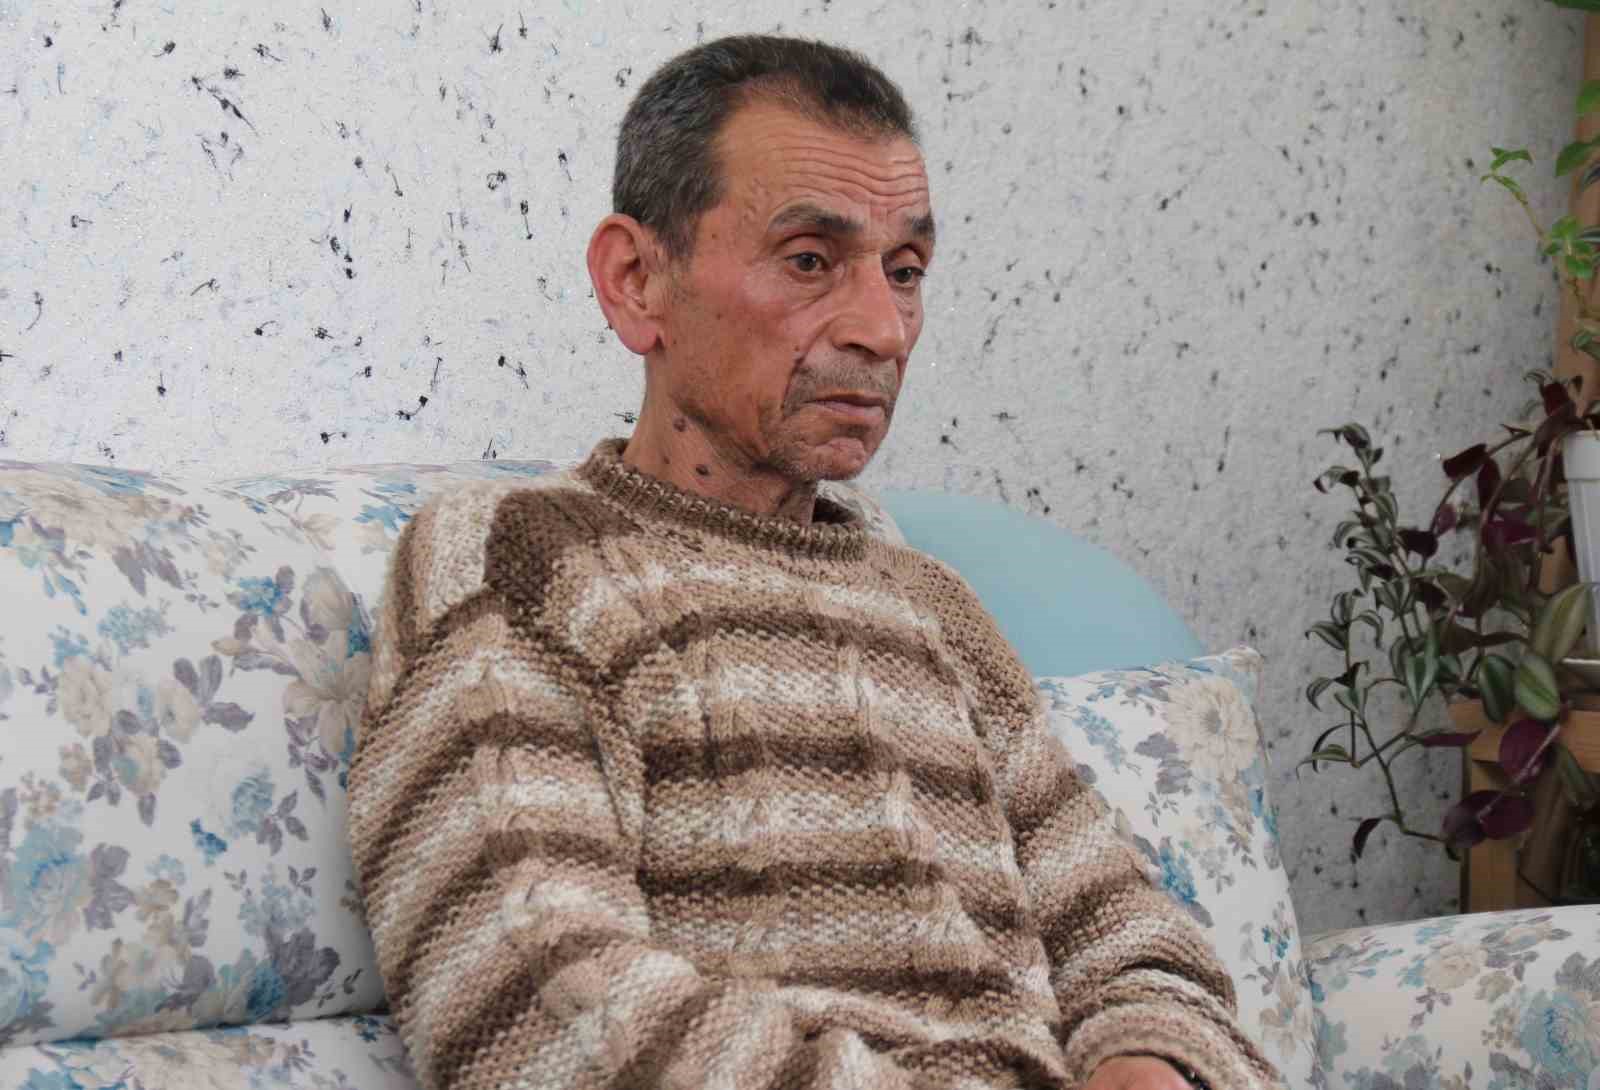 Sevgilisi tarafından öldürülen 25 yaşındaki Tuğçe Can’ın ailesi konuştu